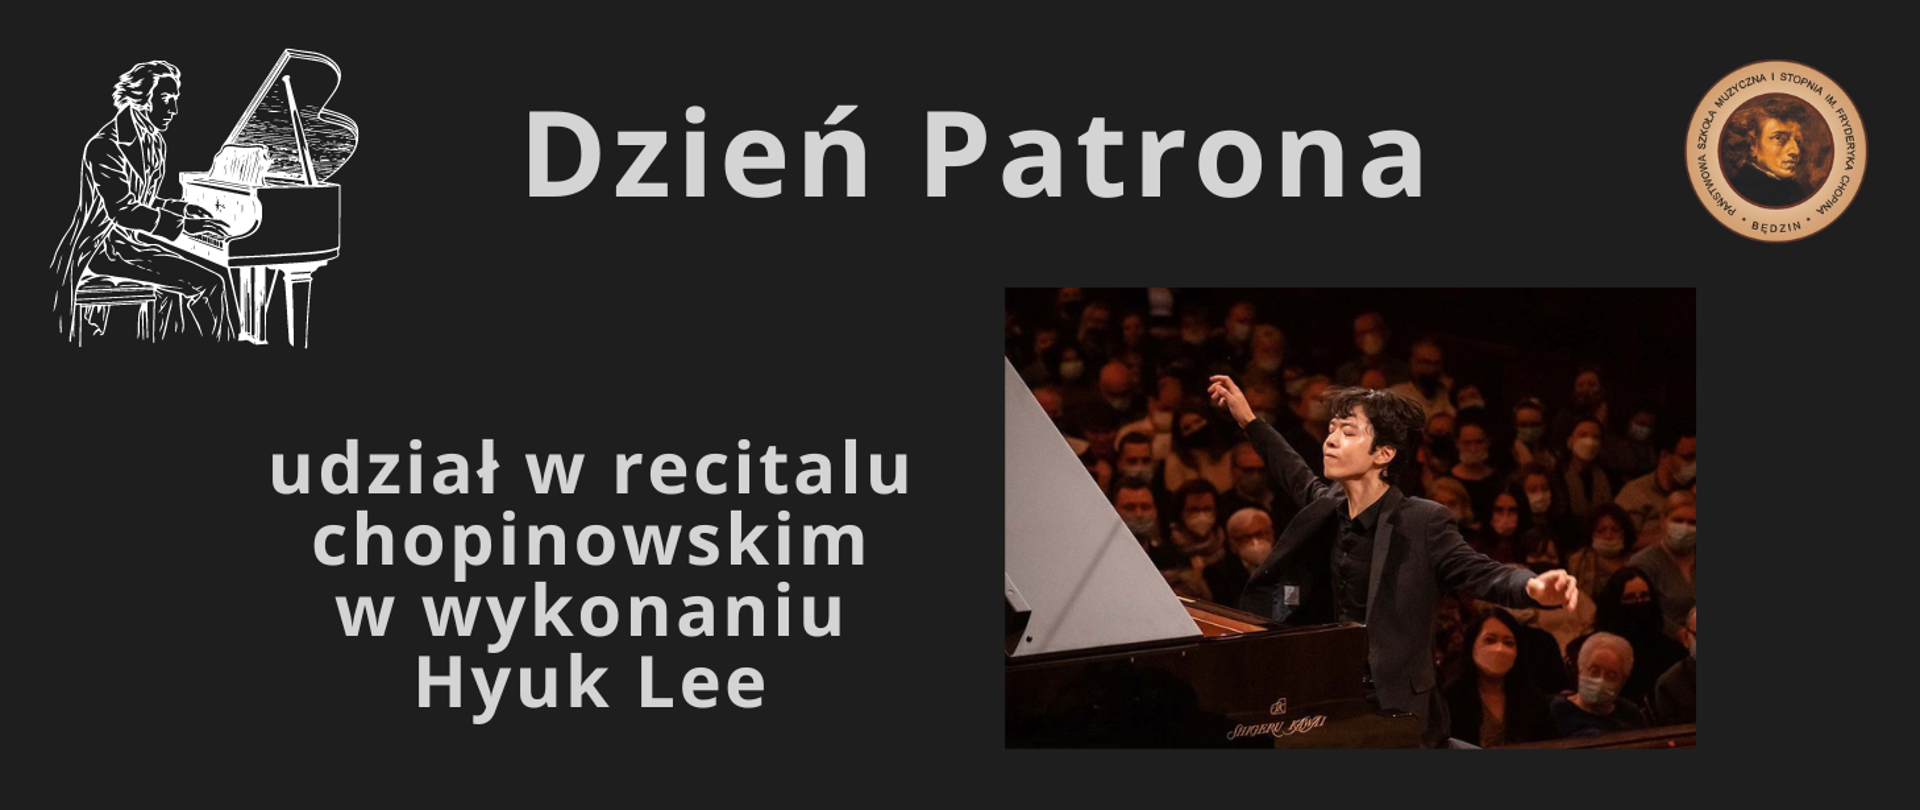 czarny baner ze zdjęciem pianisty, logo szkoły, ikona Chopina